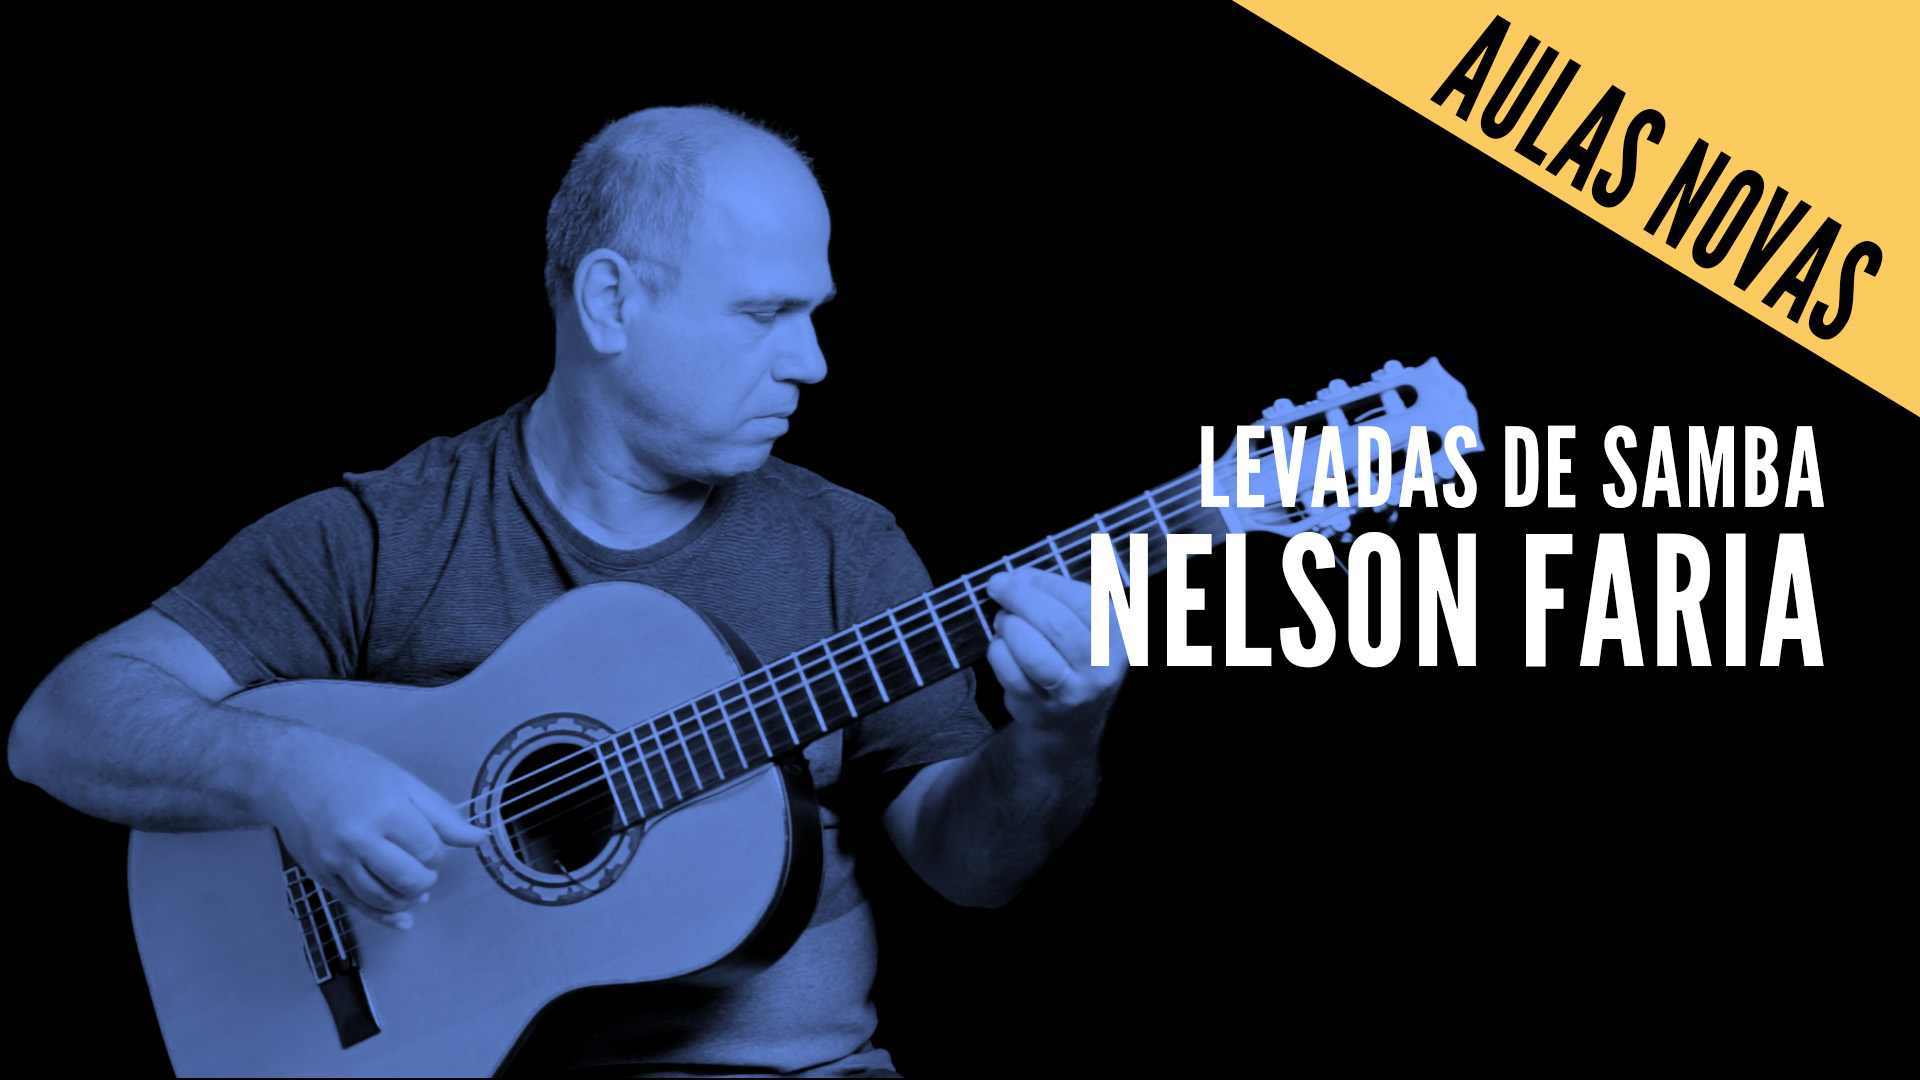 Nelson Faria segura seu violão com título "aulas novas" levadas de samba - Nelson Faria